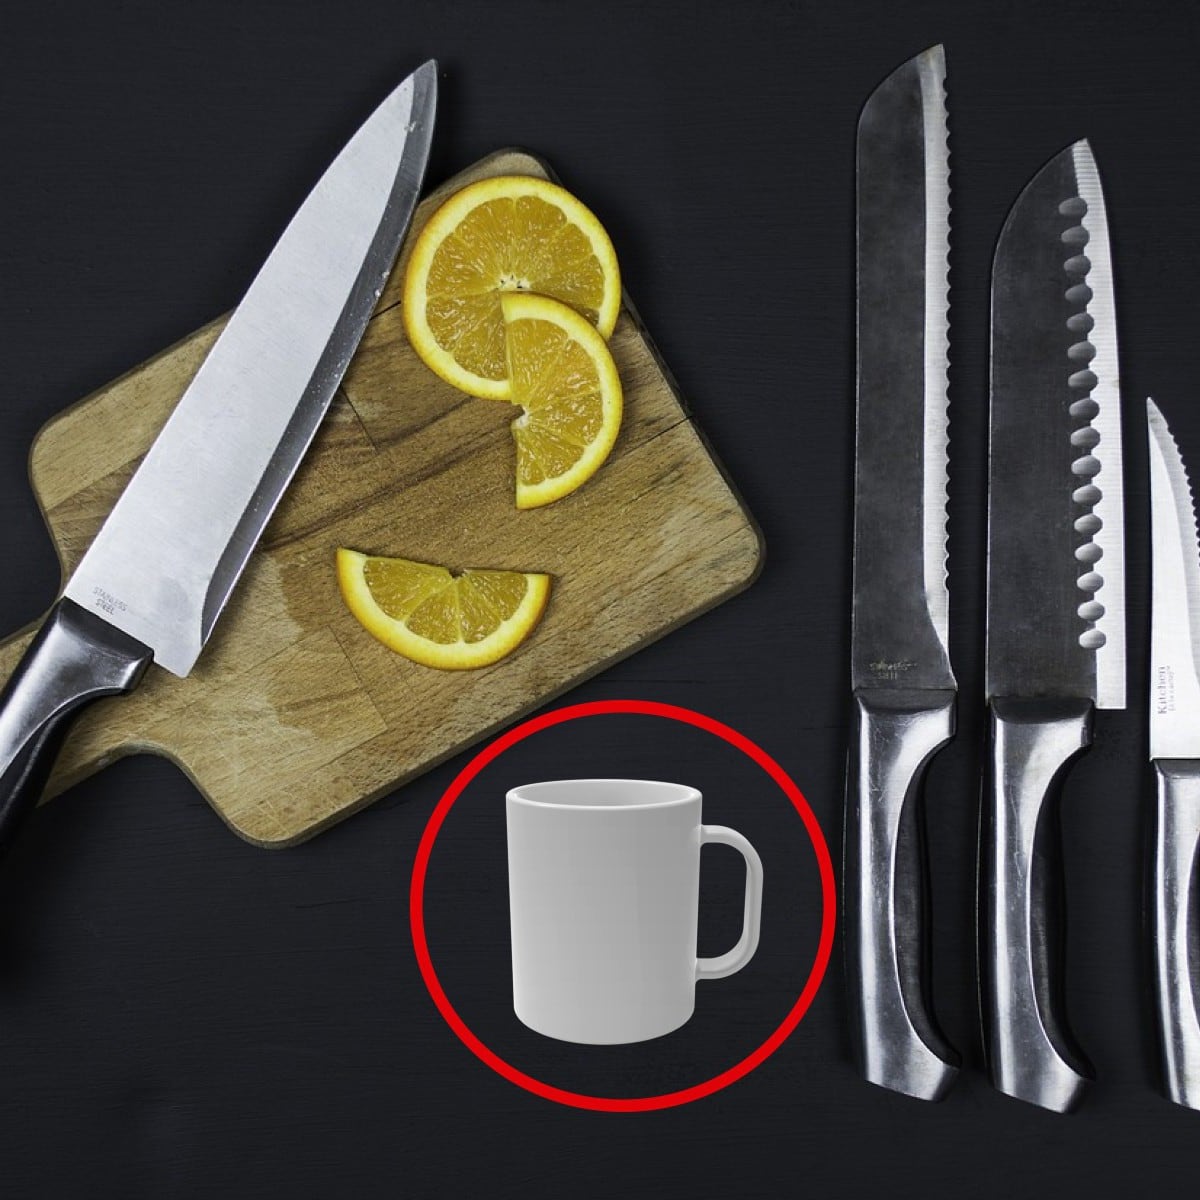 Cómo lavar, guardar y afilar cuchillos para que no te fallen al cocinar, RESPUESTAS